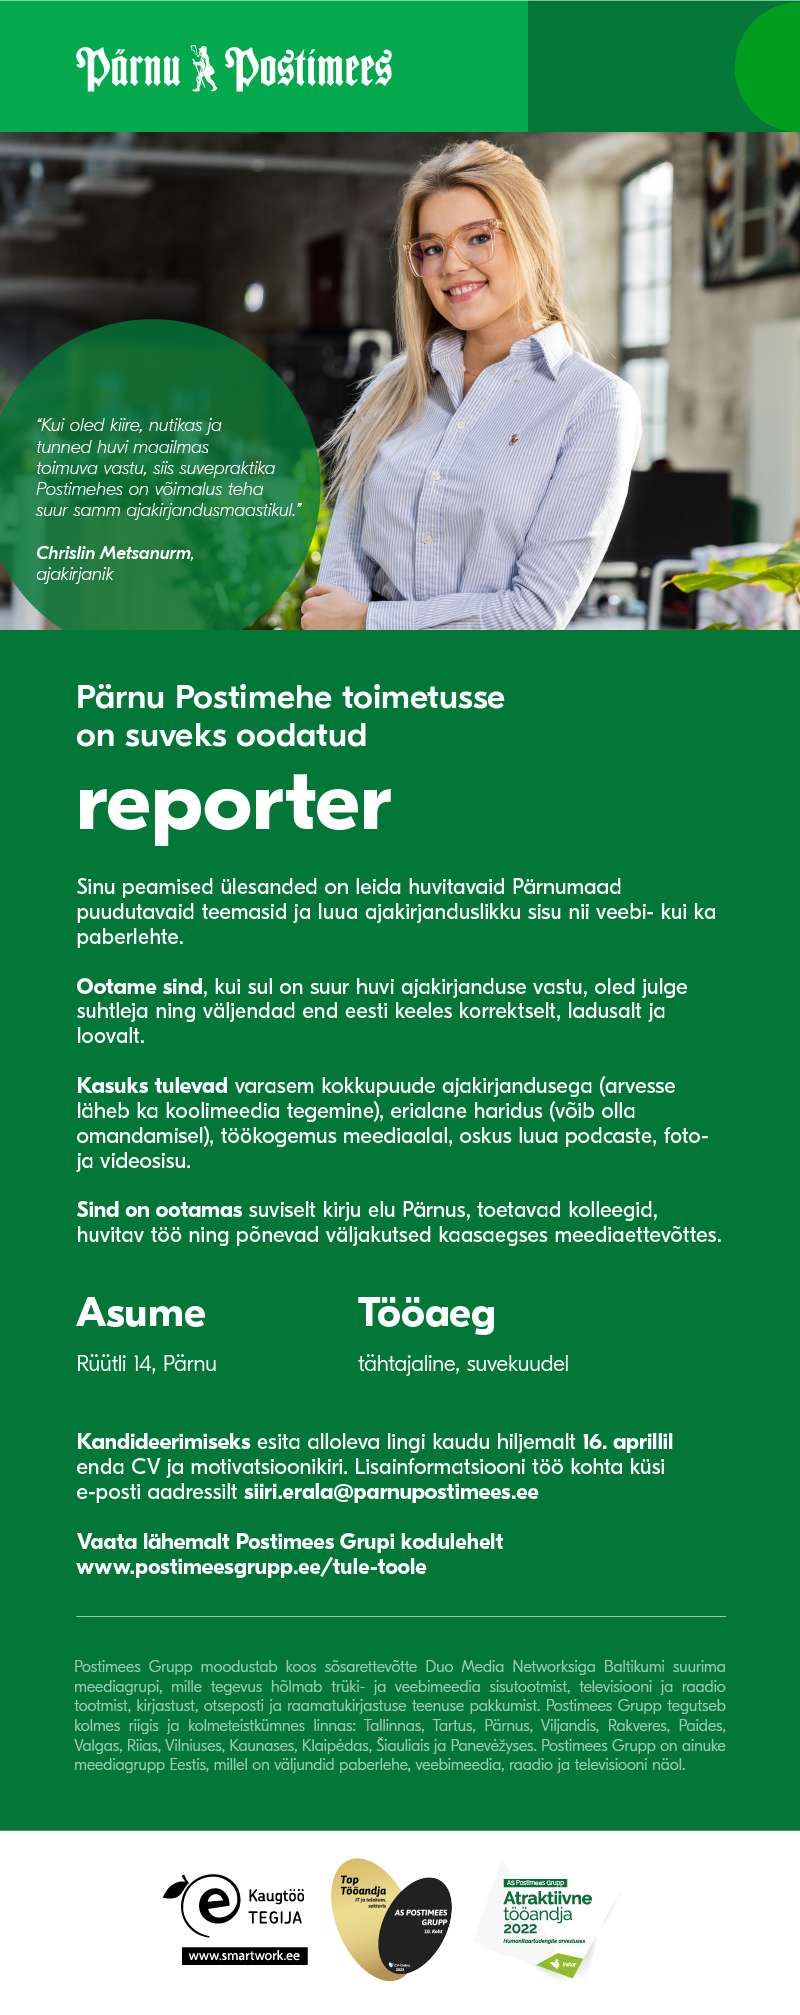 Vacancy - Pärnu Postimehe suvereporter, Postimees Grupp AS | CV-Online